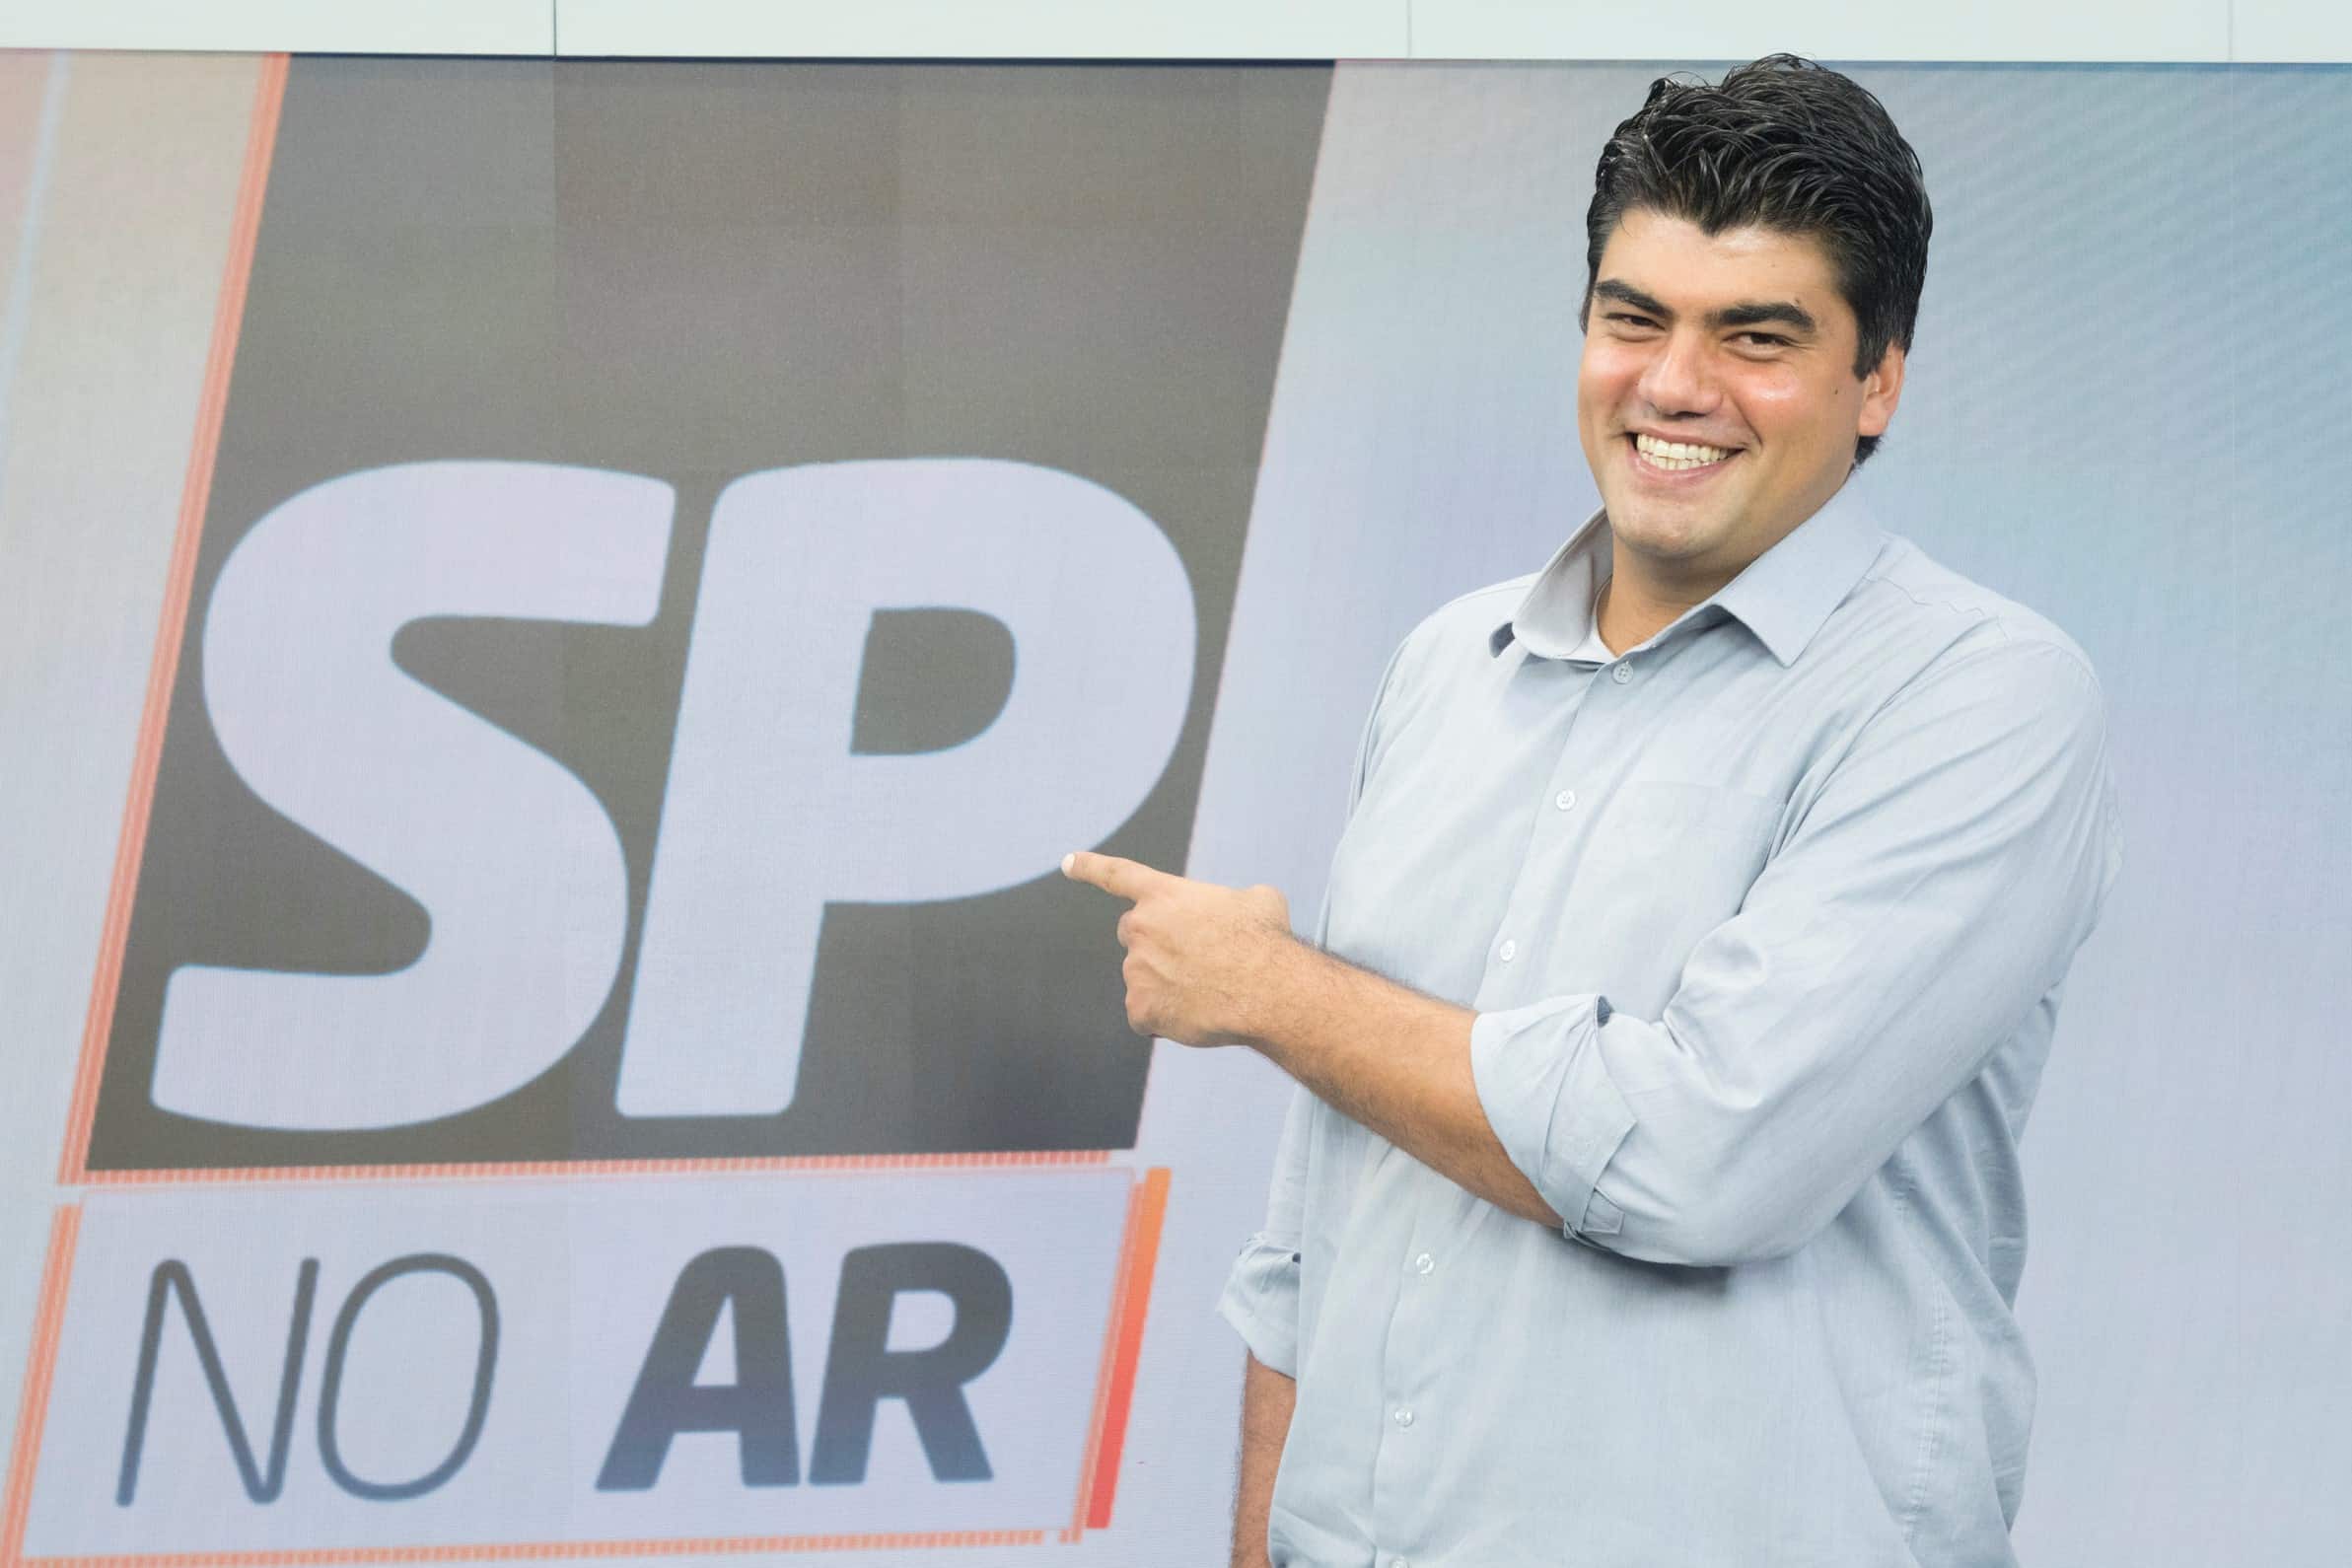 André Azeredo quebra o silêncio sobre seu afastamento do SP no Ar